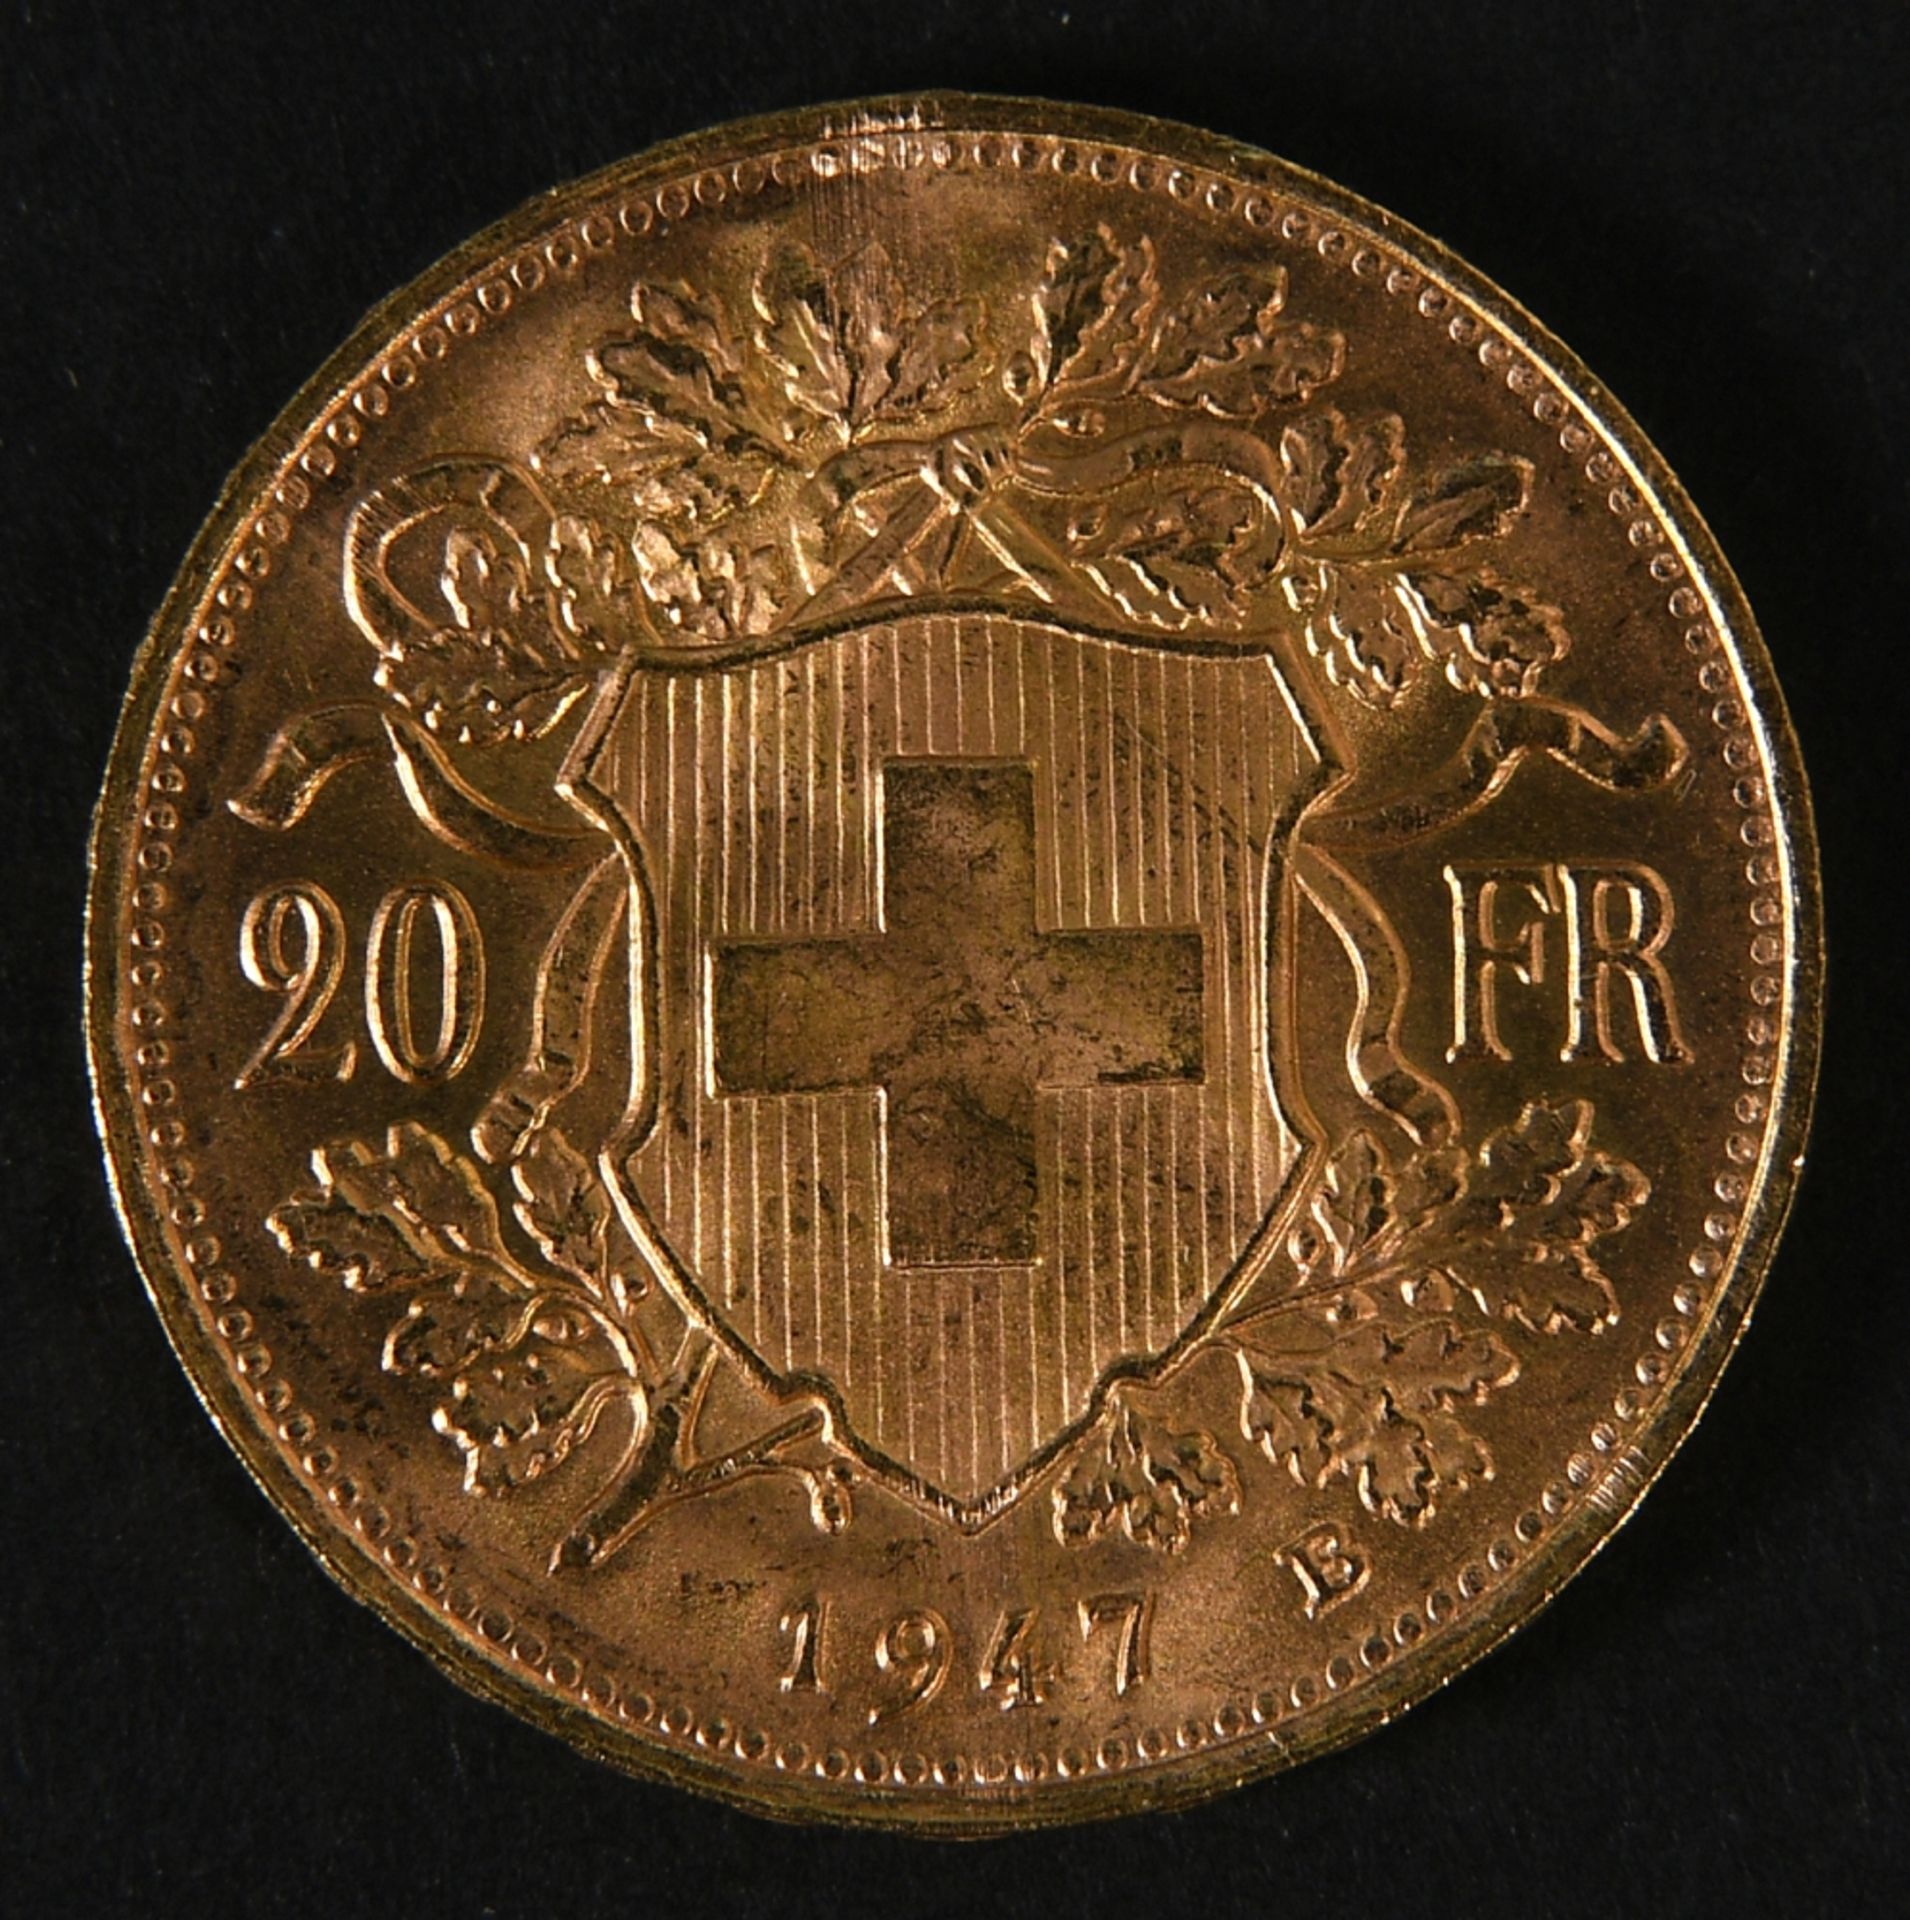 Münze - Goldmünze "20 Vreneli (Schweizer Franken) 1947" - Image 3 of 3